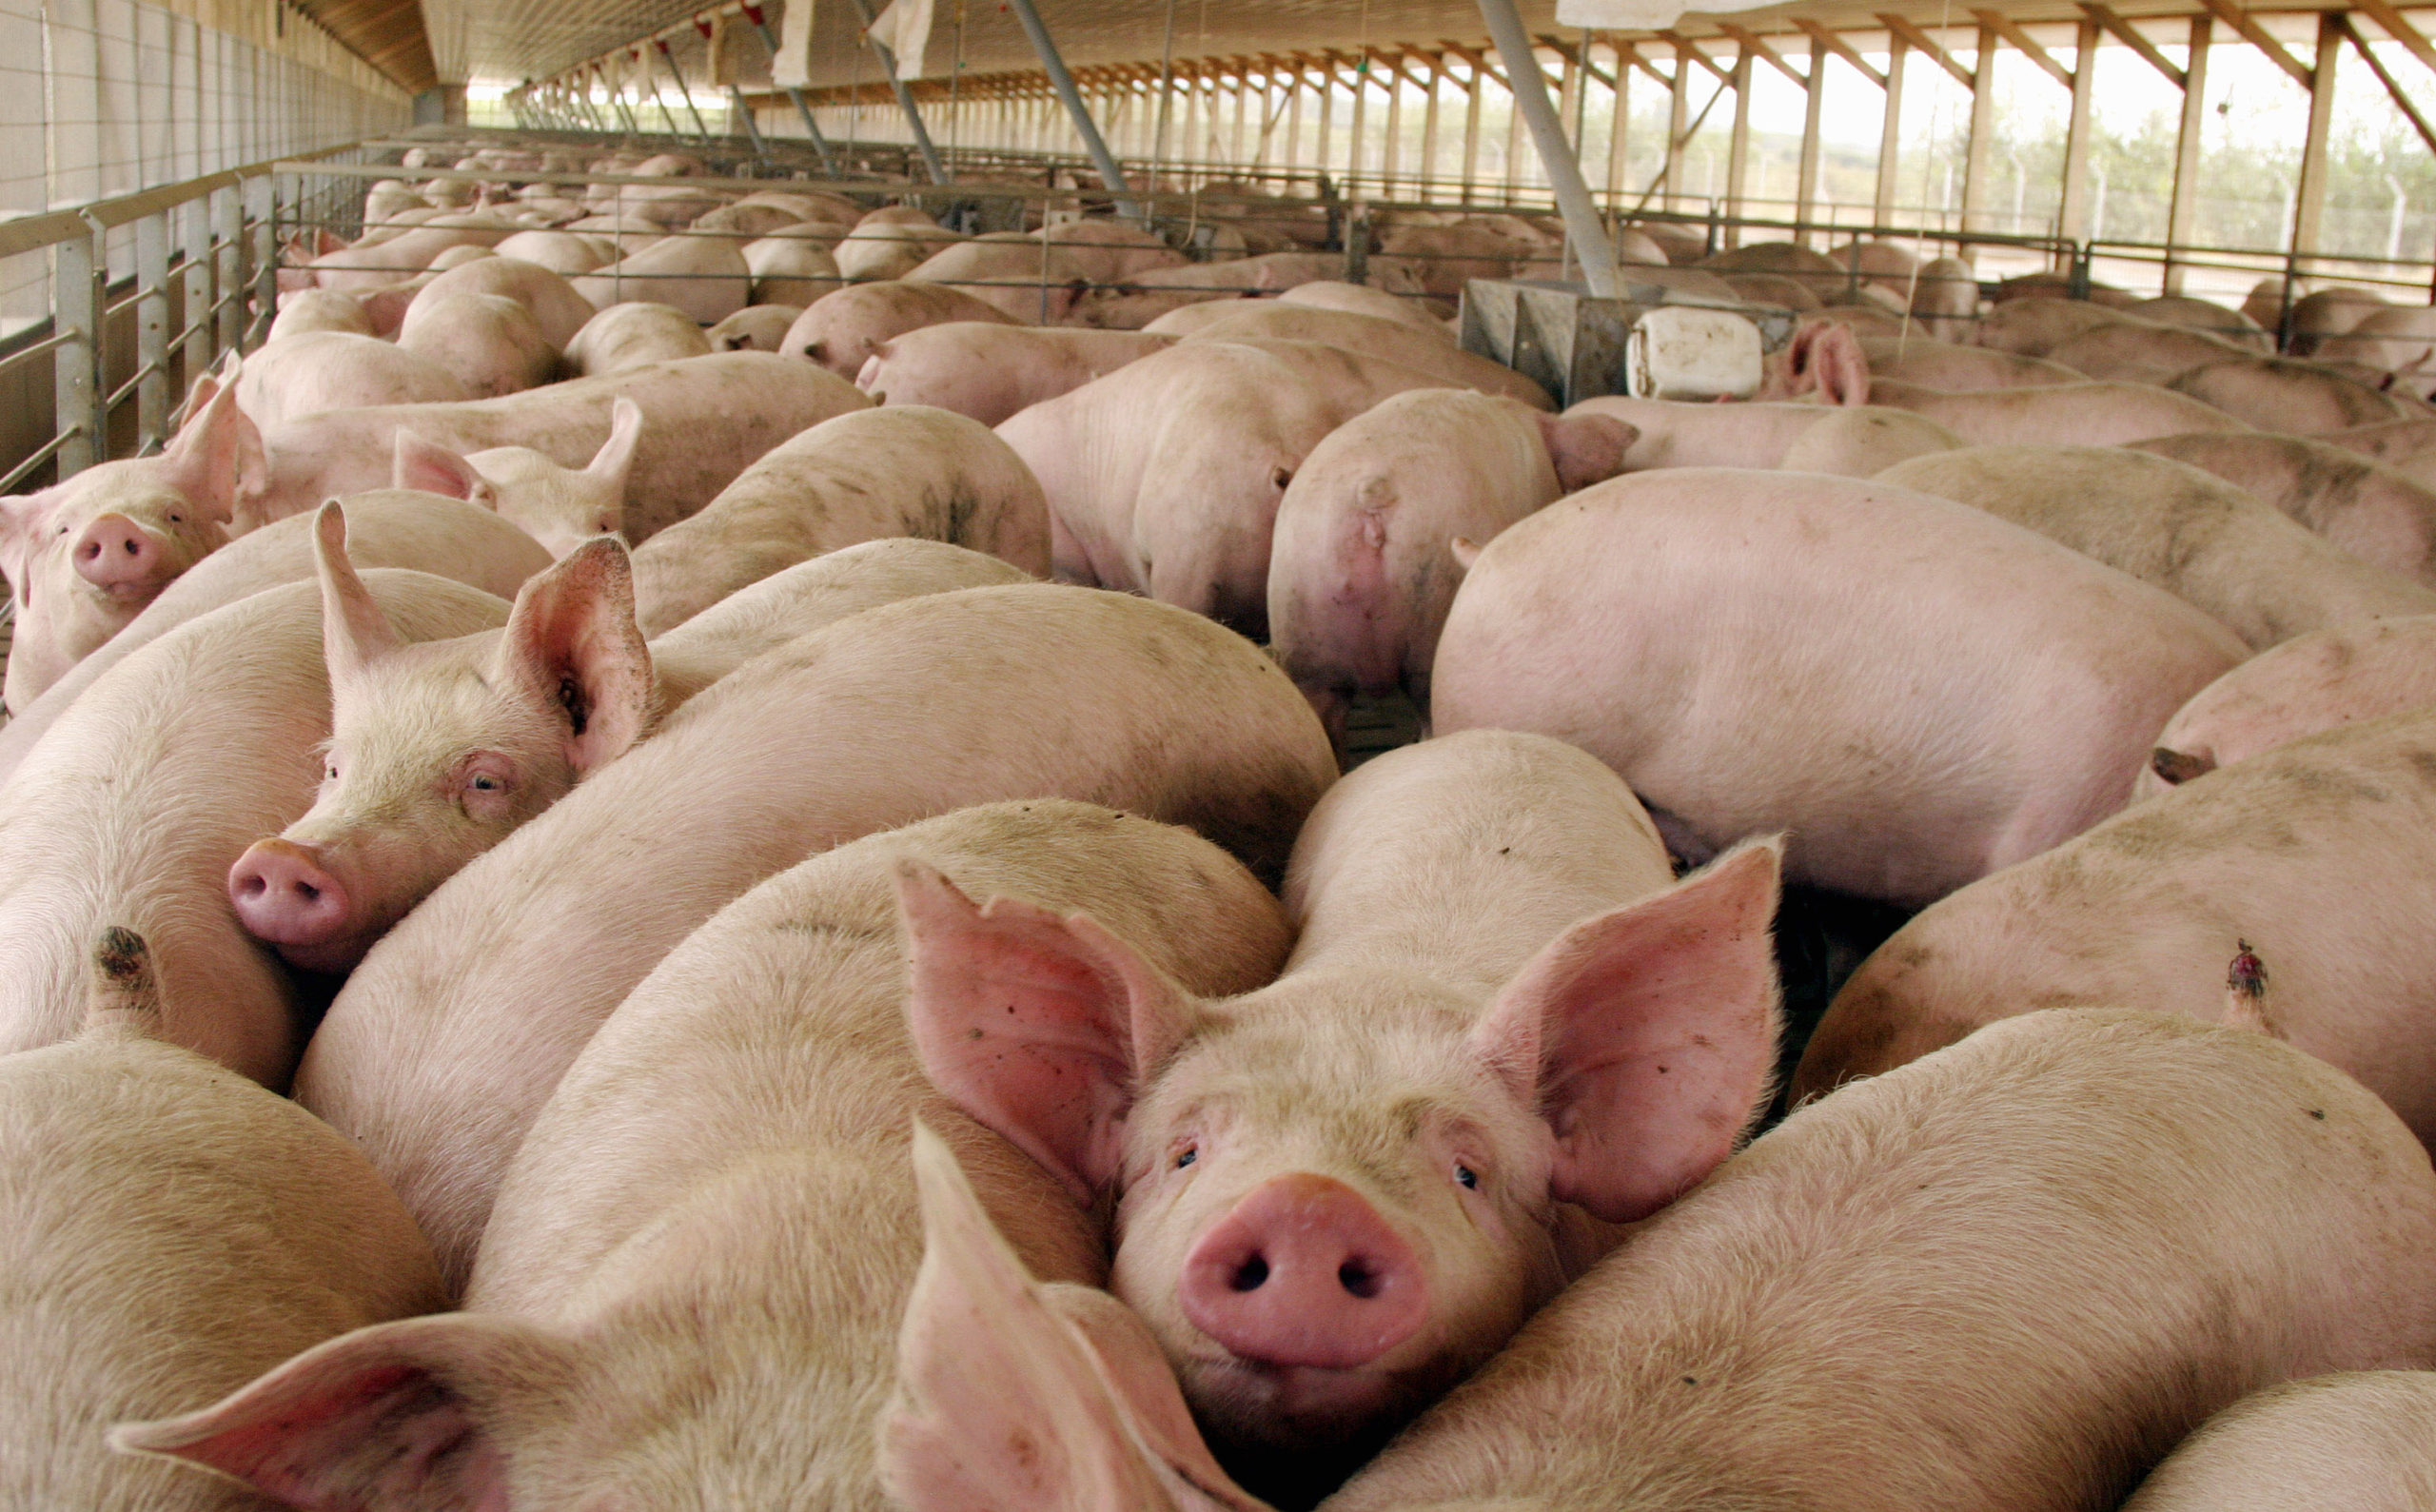 Cerdos: los costos subieron 60% en un año y se agrava la falta de rentabilidad